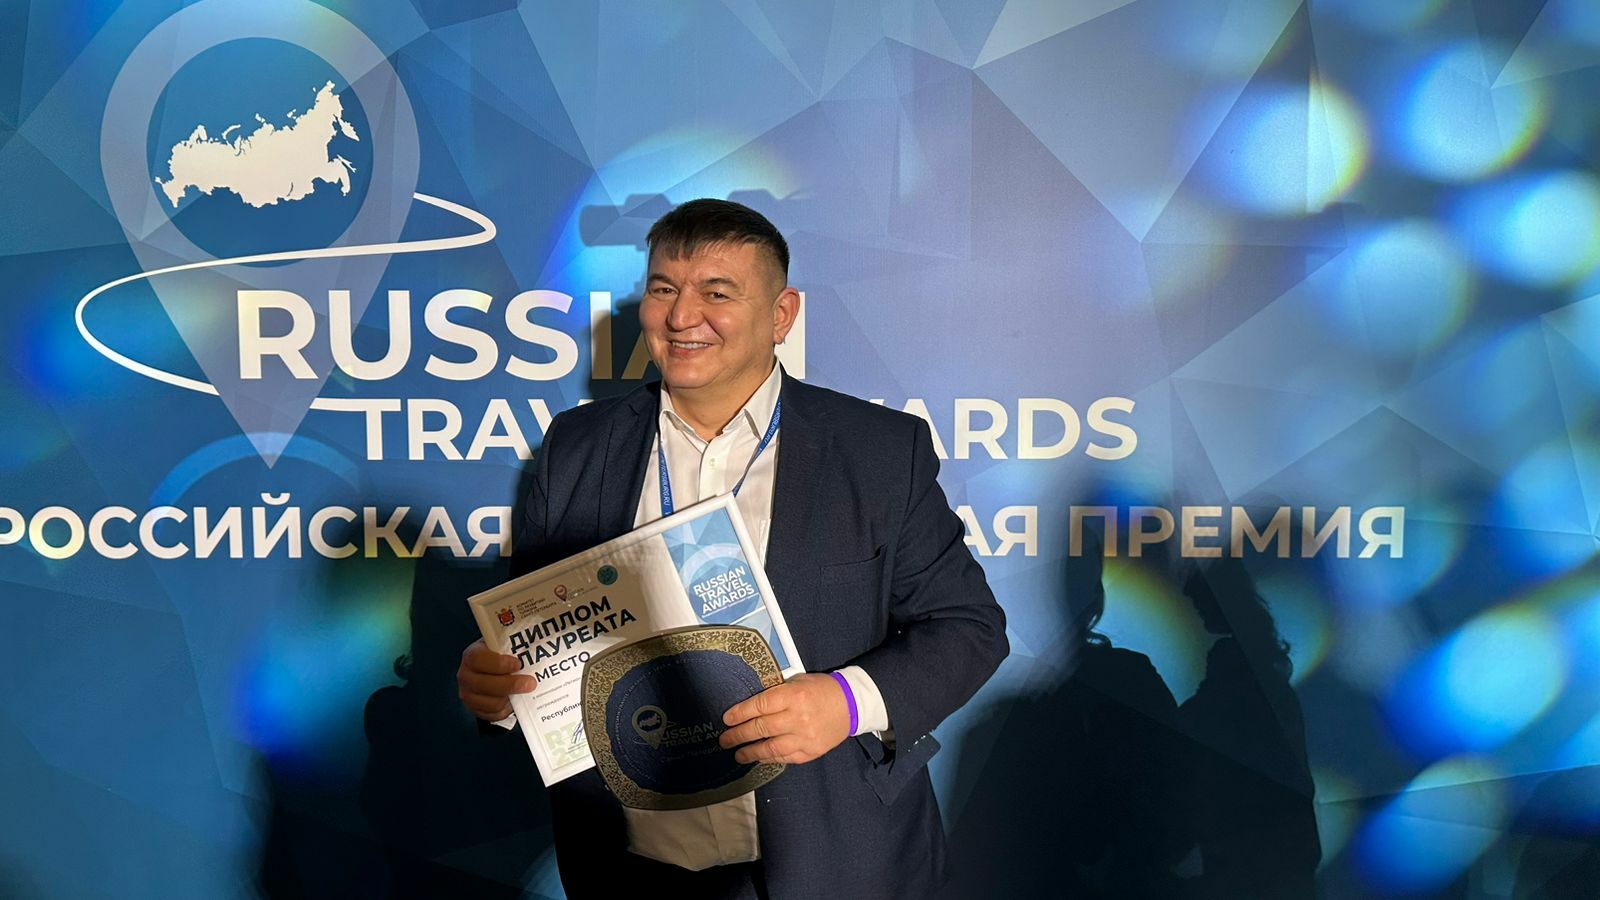 Башкортостан признан регионом этнокультурного туризма и регионом турмаршрутов и экскурсионных программ по версии Russian Travel Awards